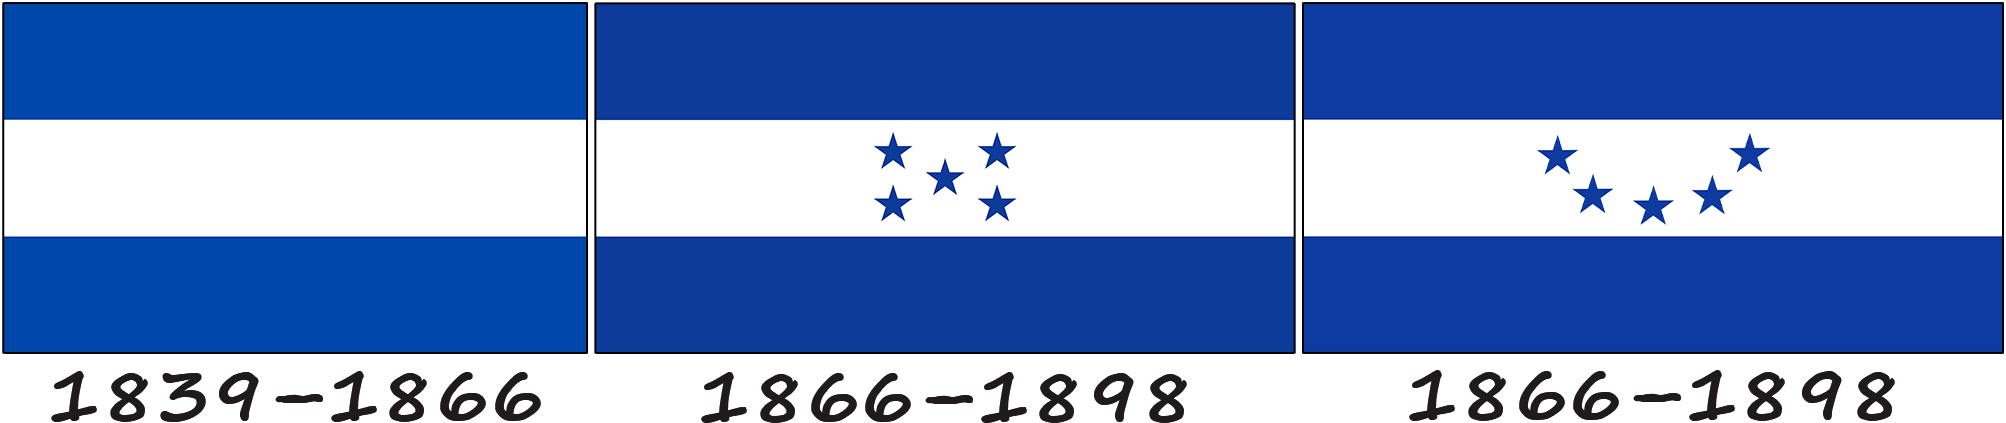 Historia de la bandera de Honduras